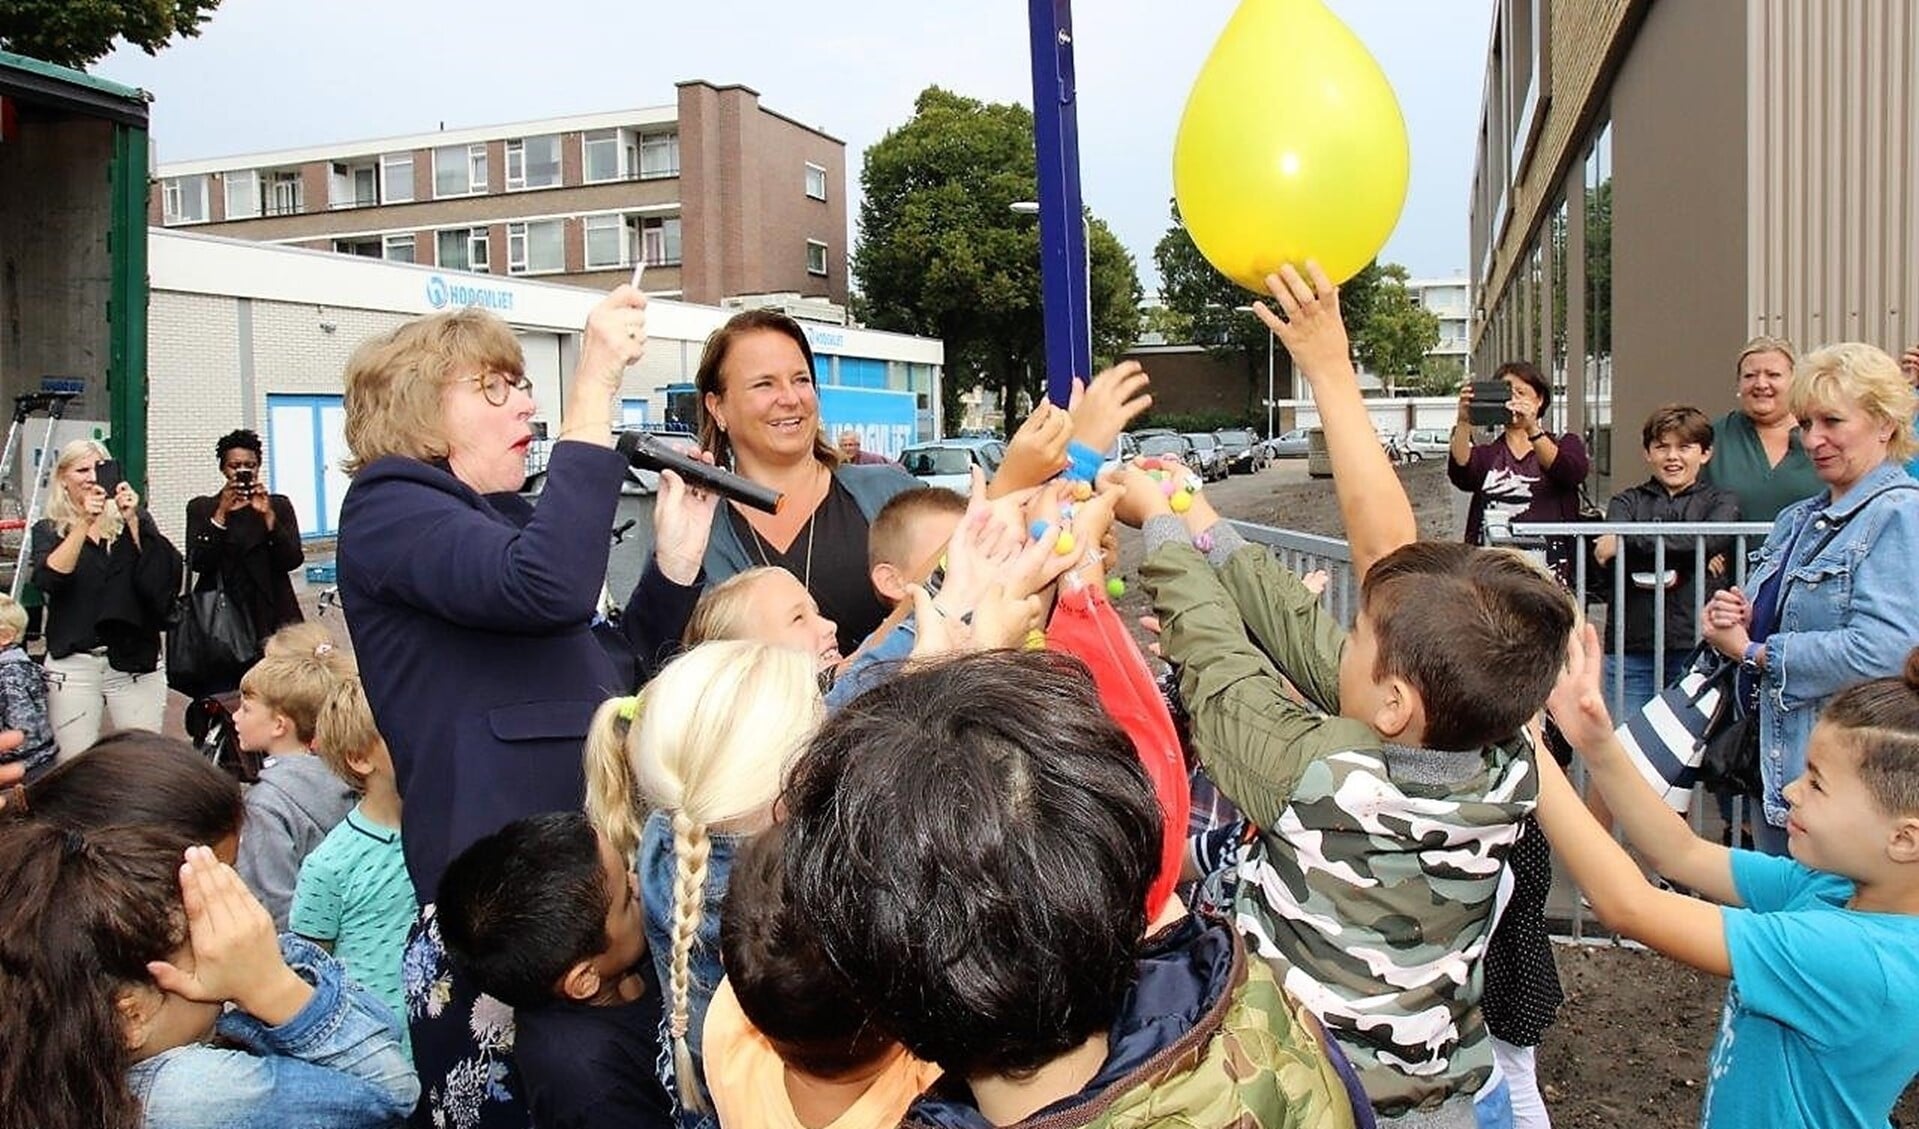 De wethouders prikken een ballon met knikkers door, die door de kinderen mochten worden opgeraapt (foto's: Ap de Heus).